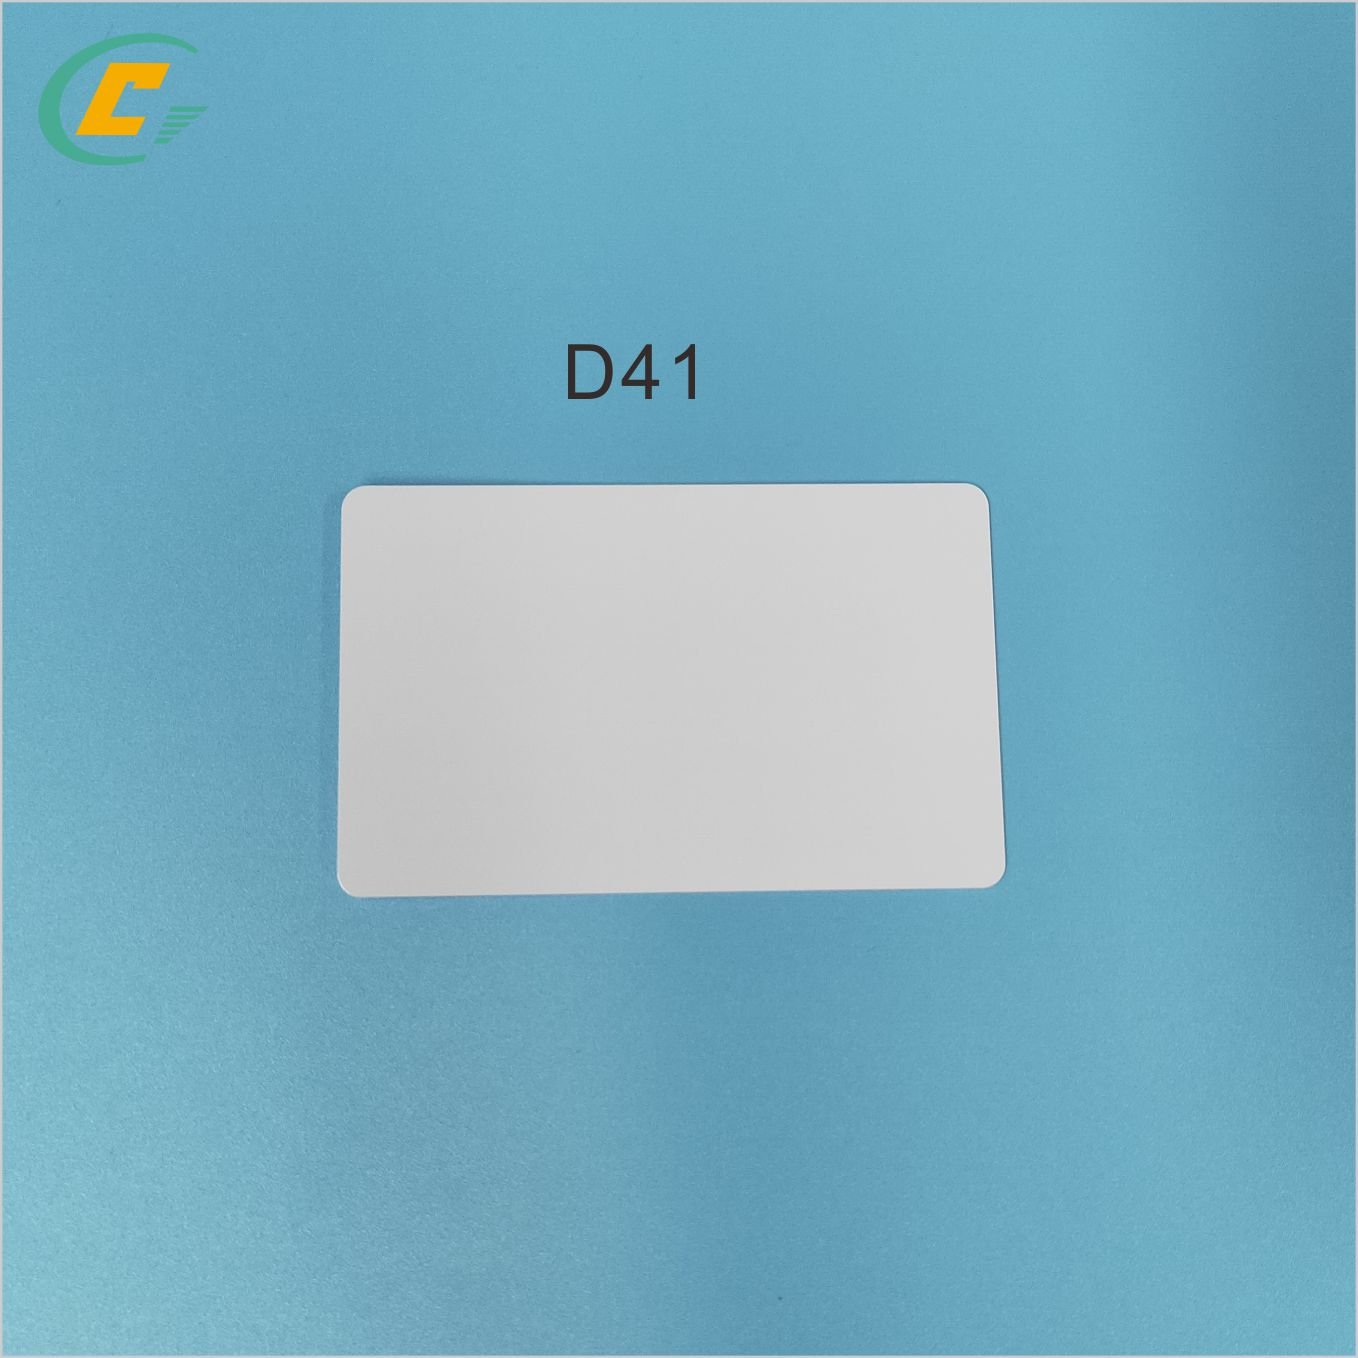 D 41 card